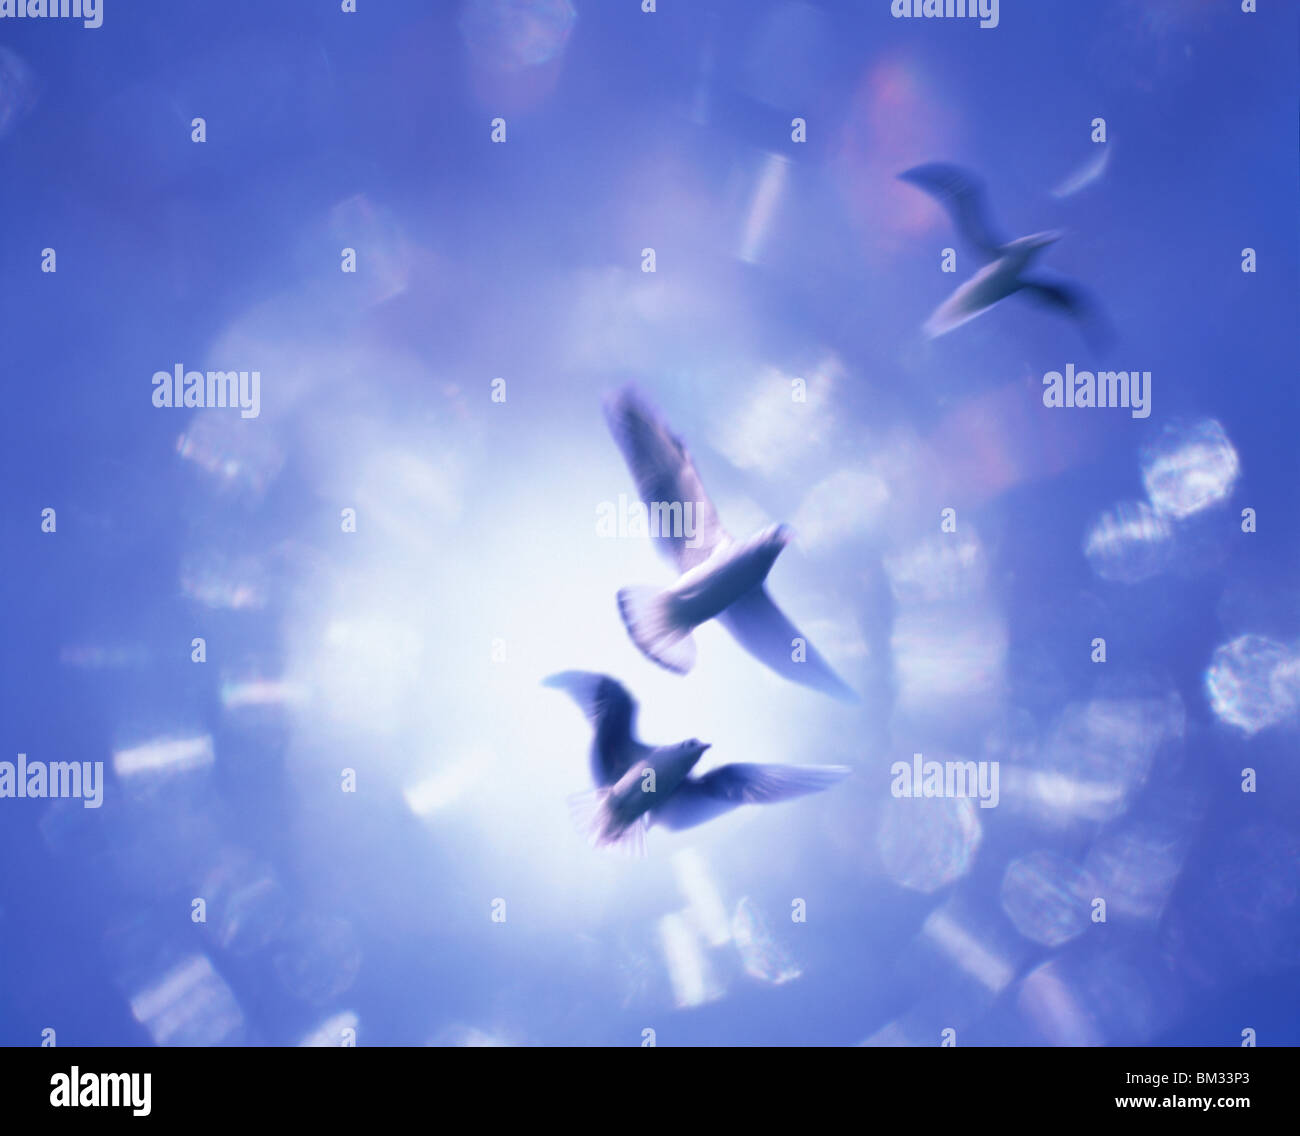 Drei Vögel in der Luft, blauer Hintergrund, Computer Graphic, verschwommene Bewegung Stockfoto